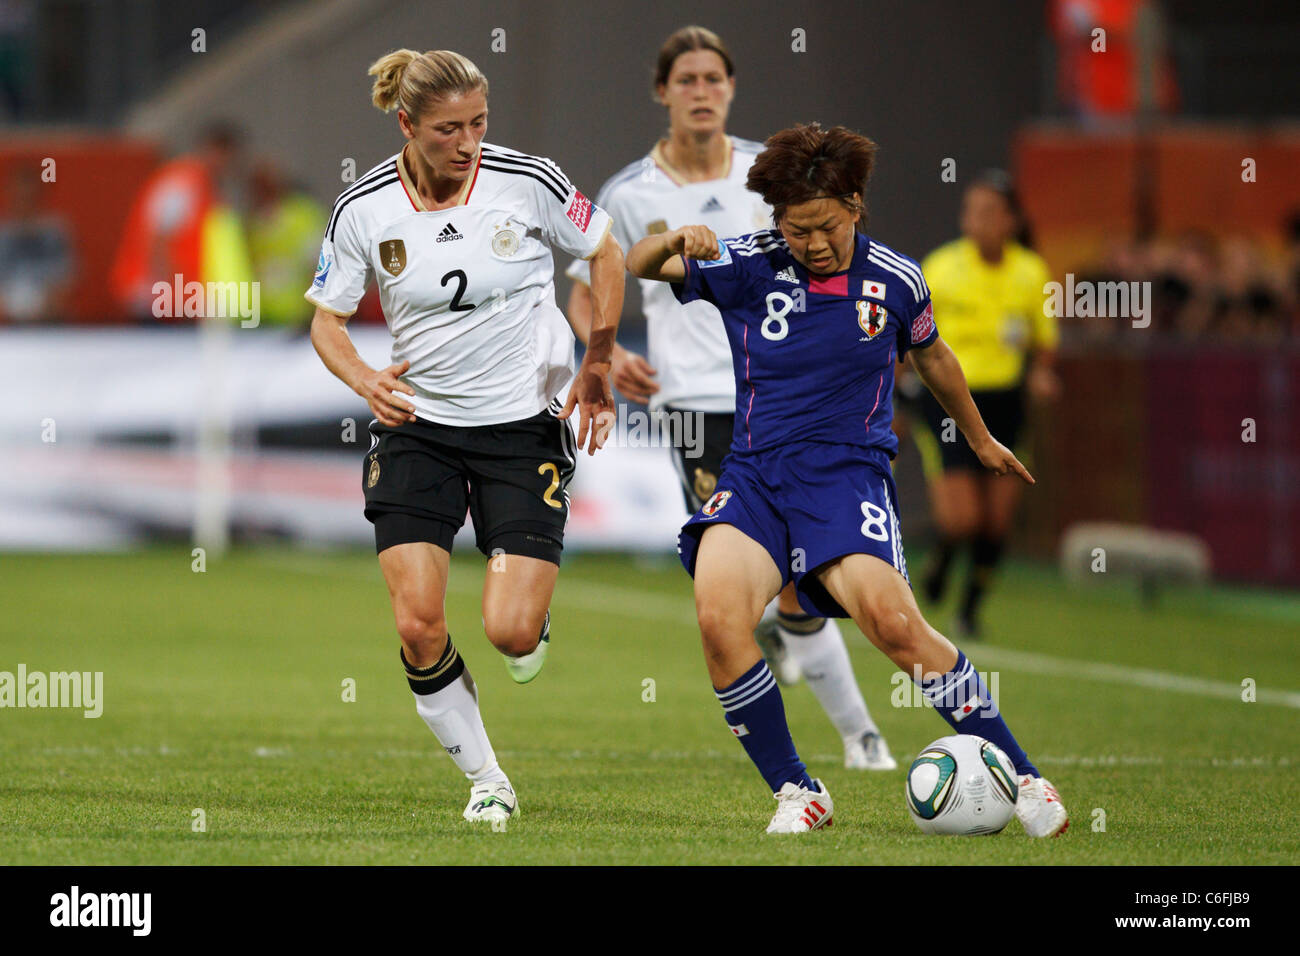 Aya Miyama du Japon (8) en action contre Bianca Schmidt de Allemagne (2) au cours d'une Coupe du Monde féminine 2011 match quart de finale. Banque D'Images